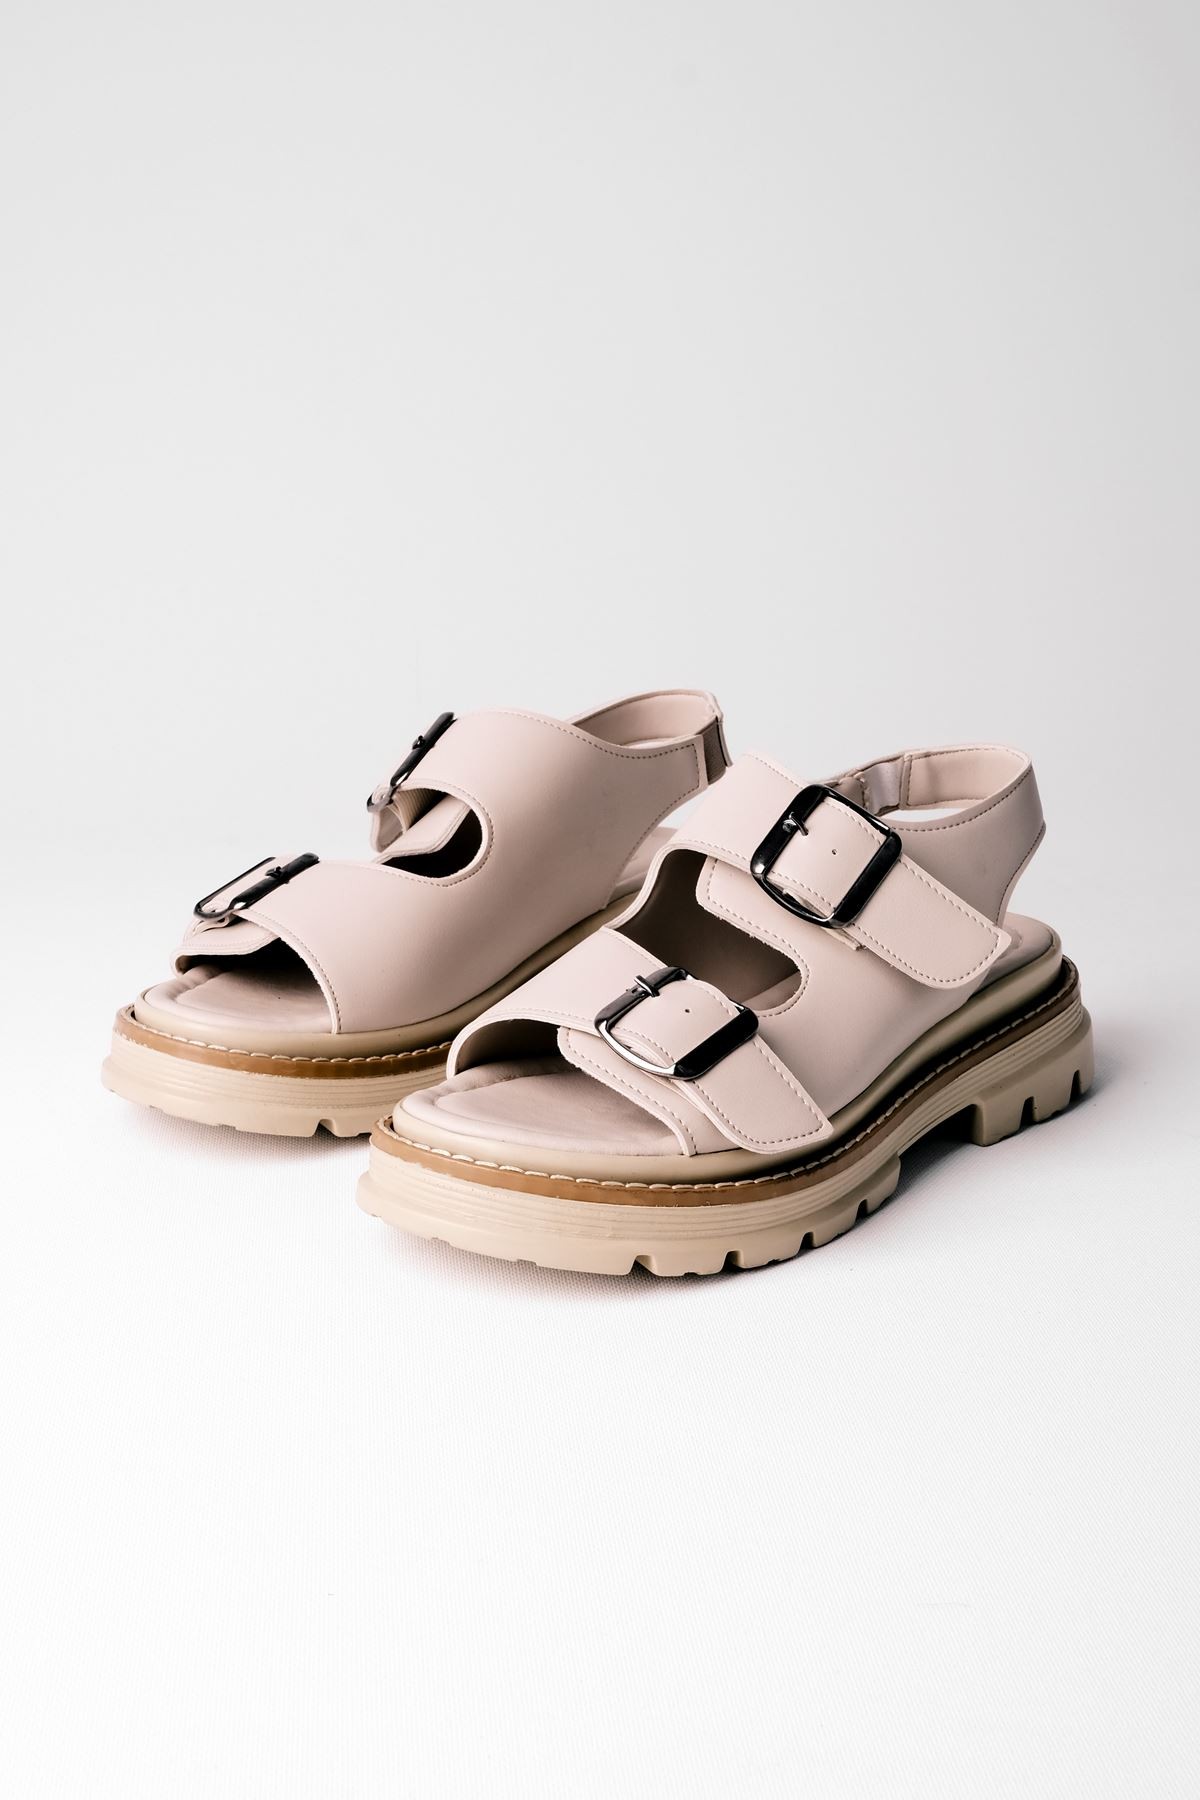 Serny İki Kemeli Kadın Sandalet B3250 - Krem